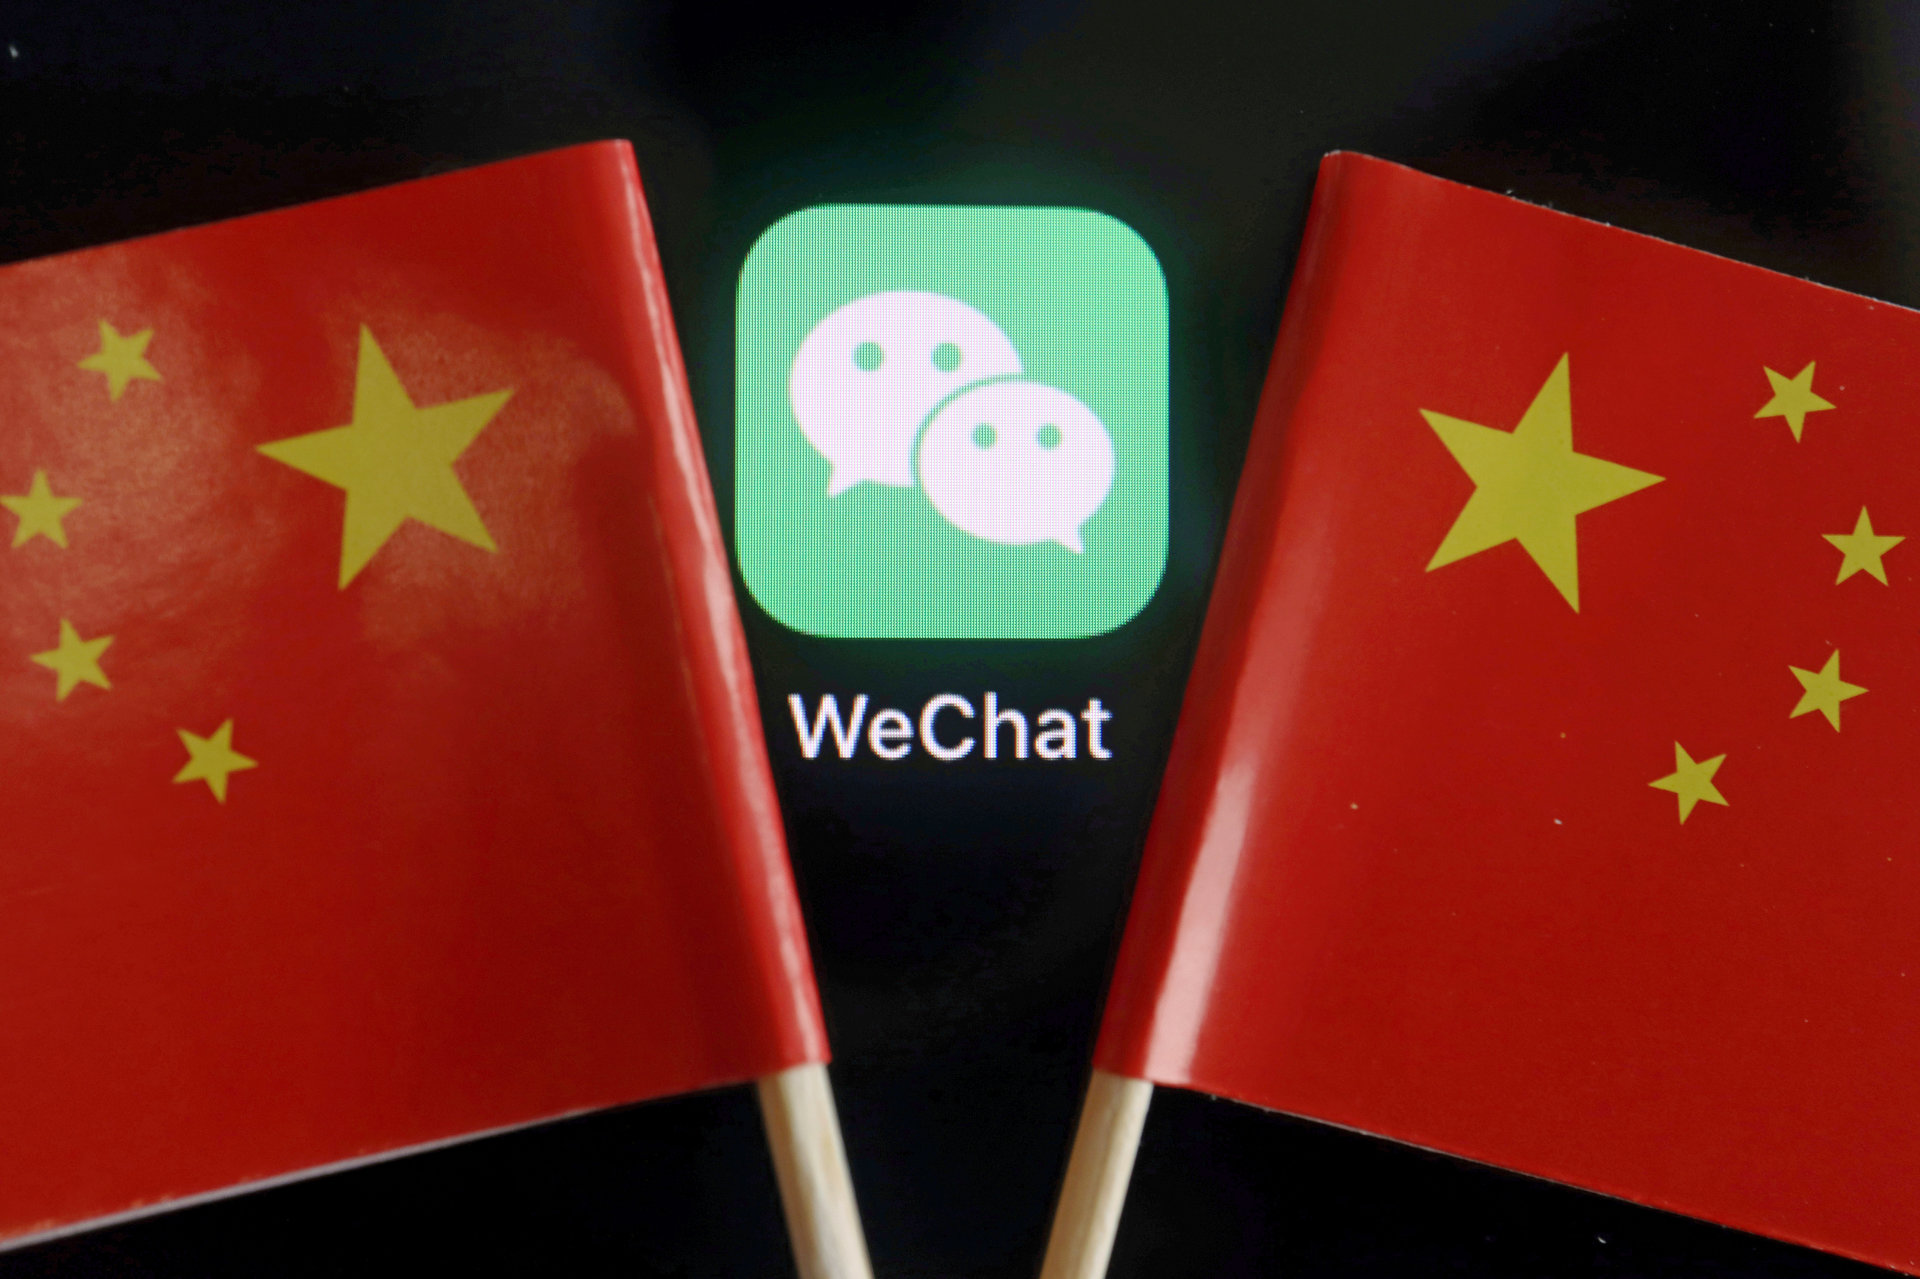 米国のWeChat禁止令で「ファーウェイが伸びアップルが失墜」の可能性